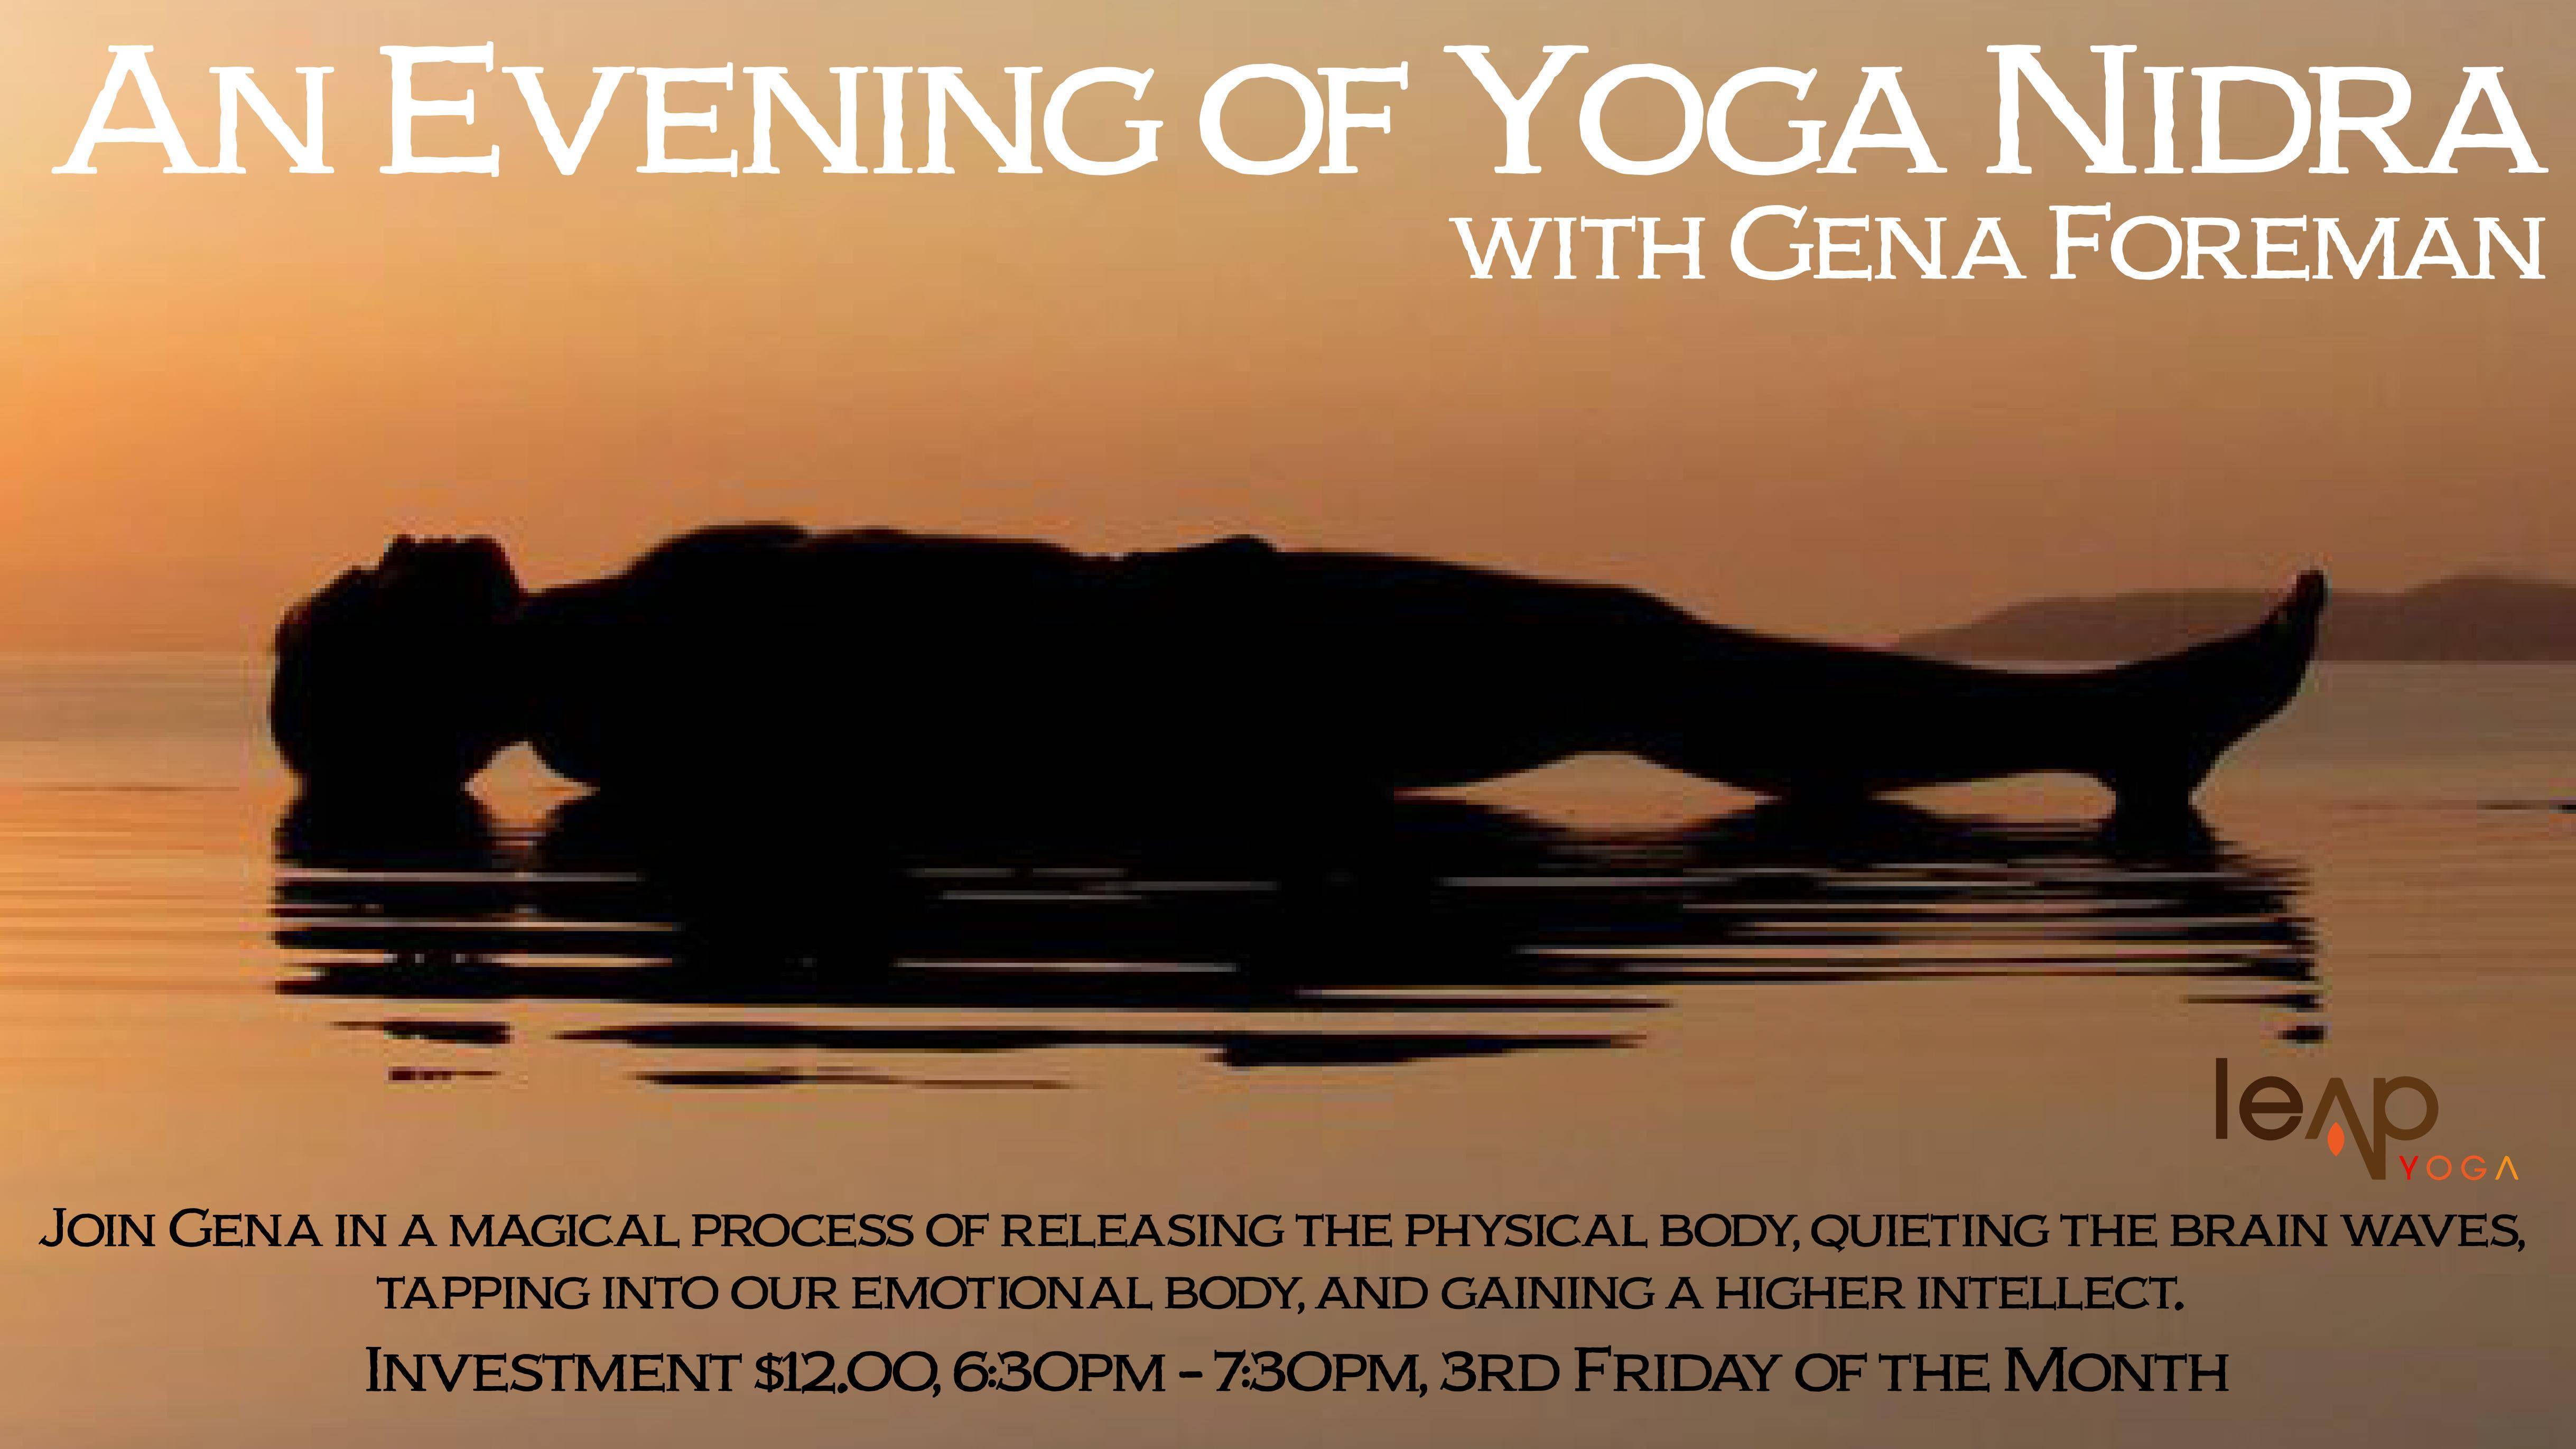 Йога-нидра: мощная практика расслабления и восстановления жизненных сил